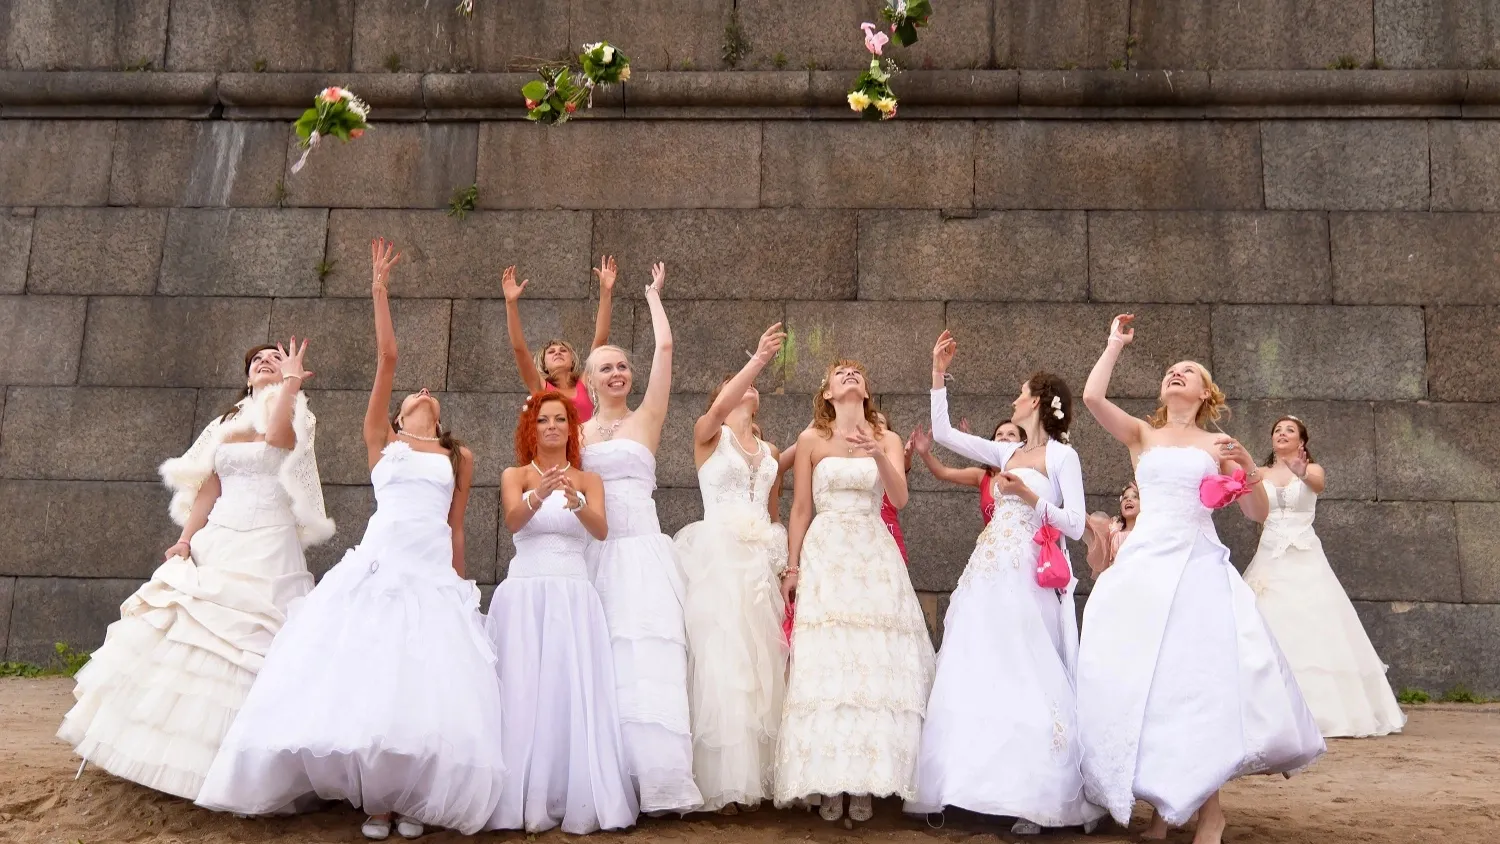 Традиции чествовать невест есть во многих городах. Фото: Anna Krivitskaya / Shutterstock.com